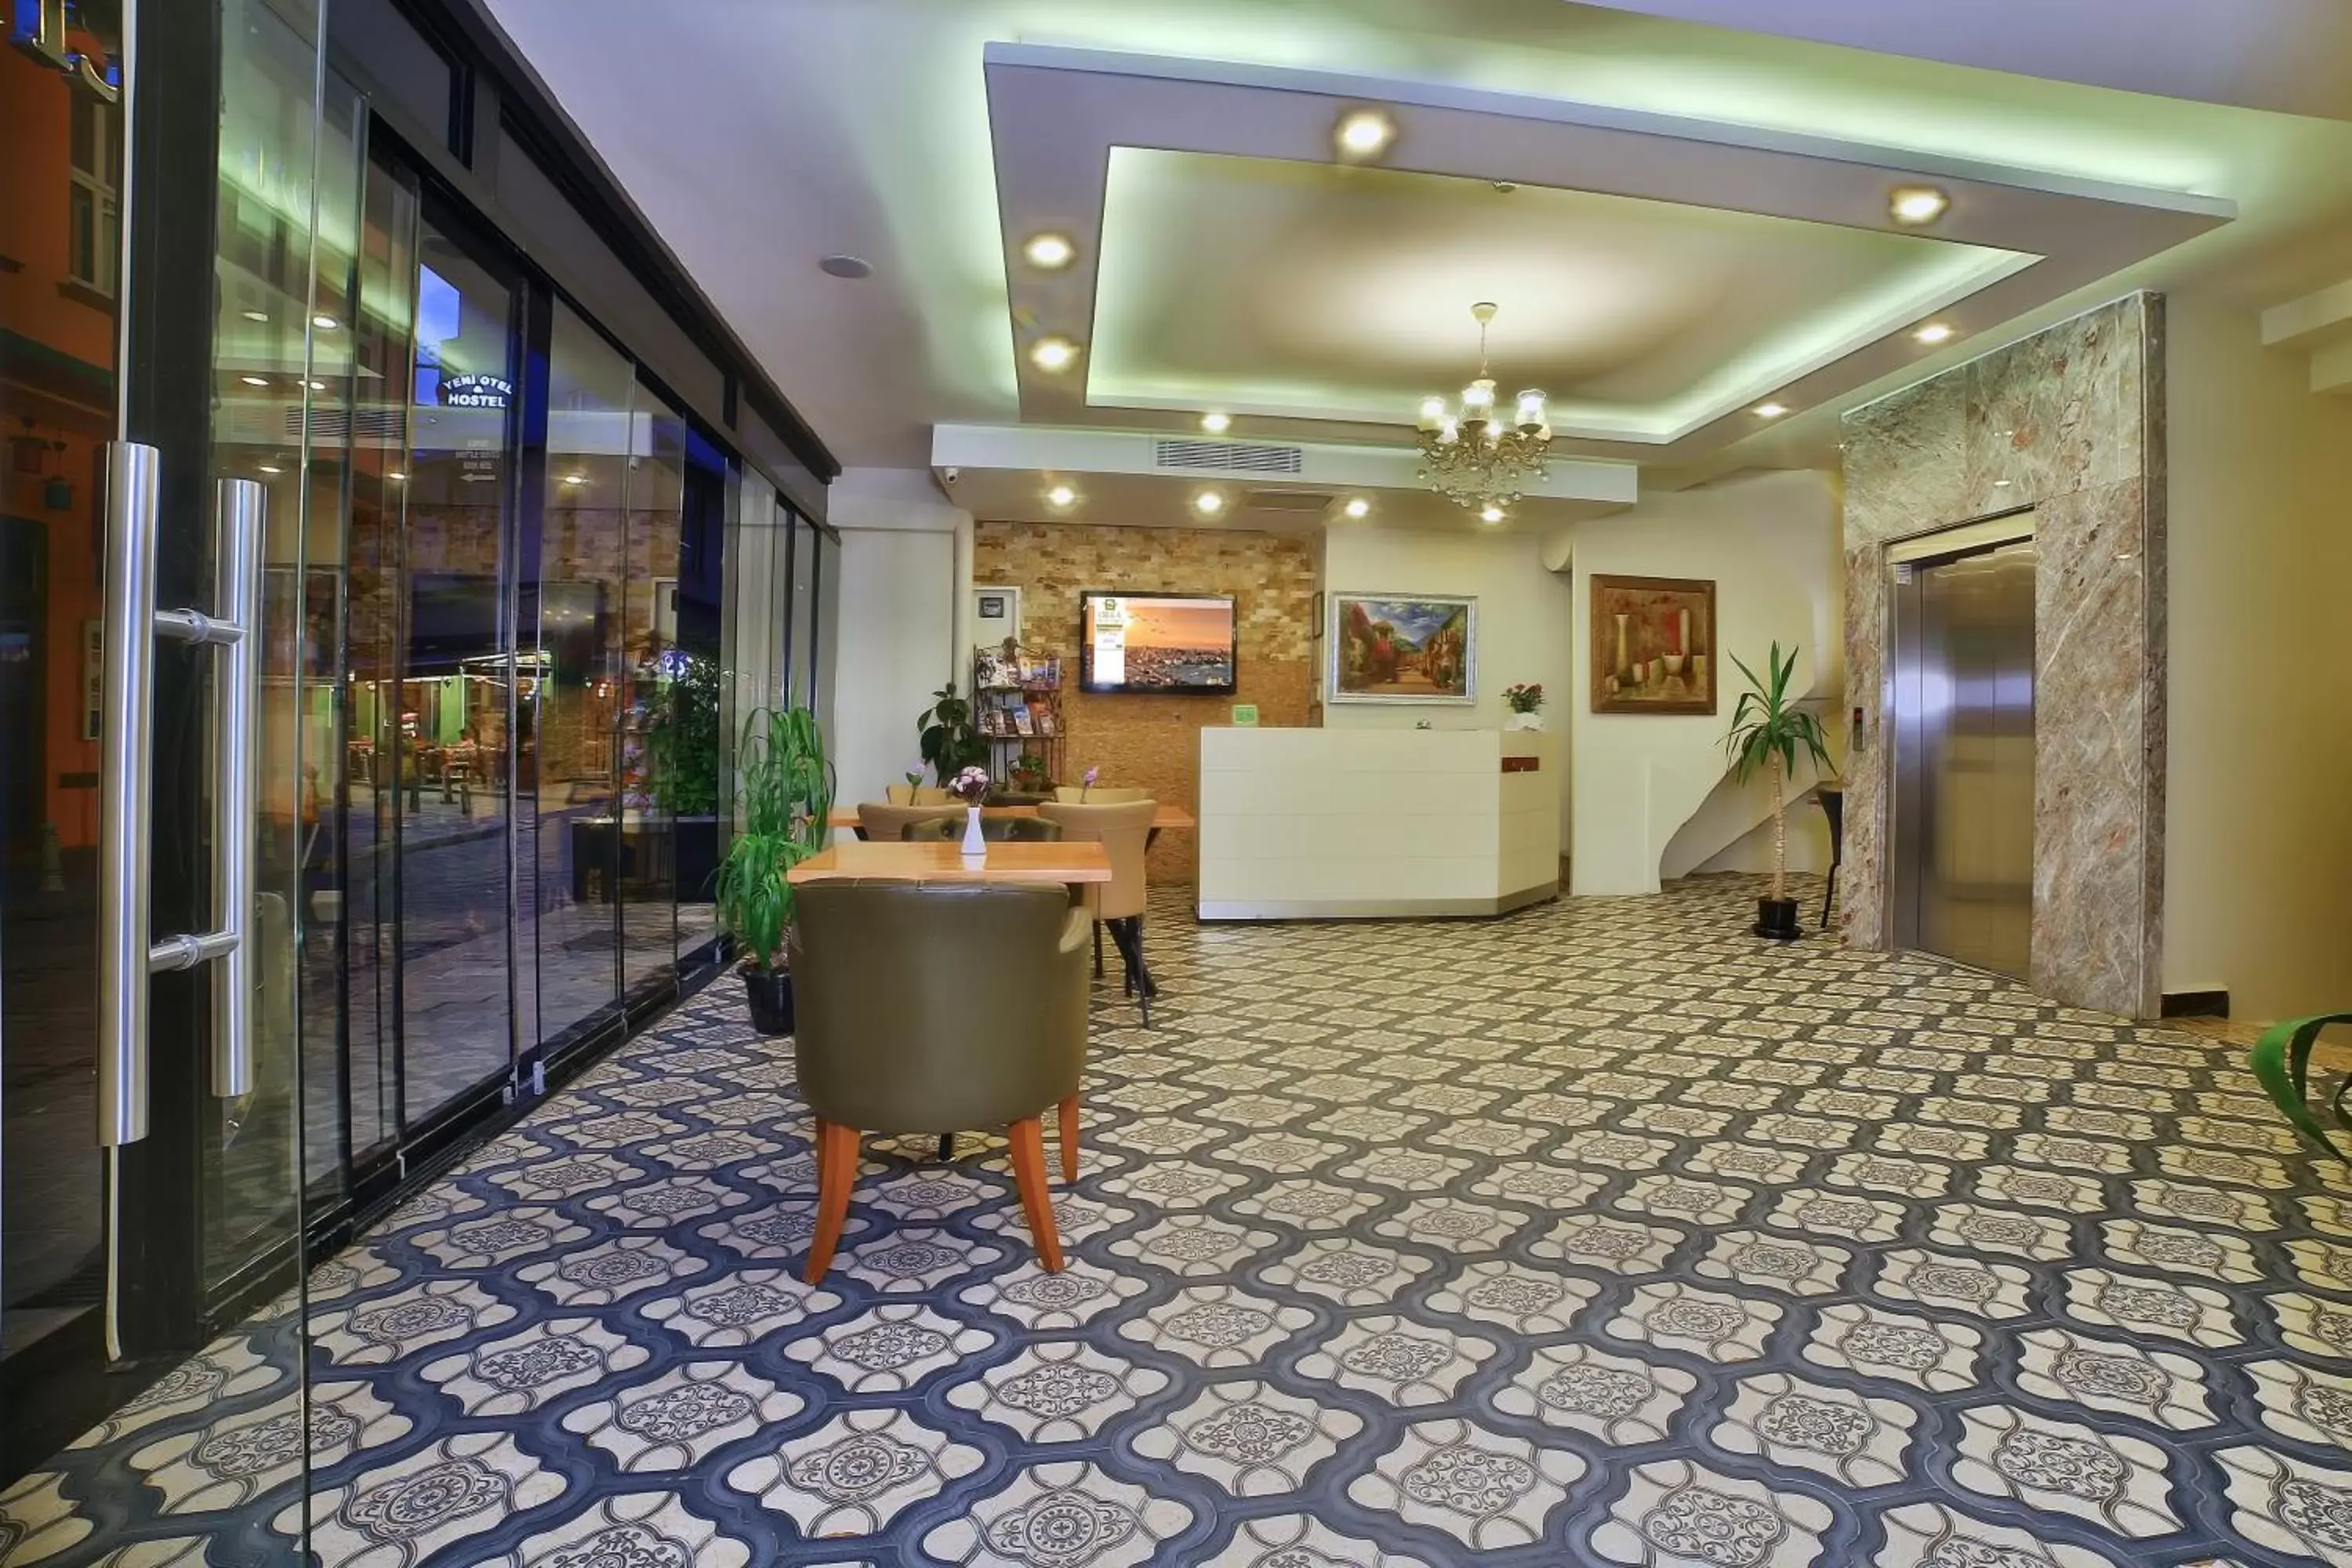 Lobby or reception, Lobby/Reception in Amara Old City Hotel & Spa